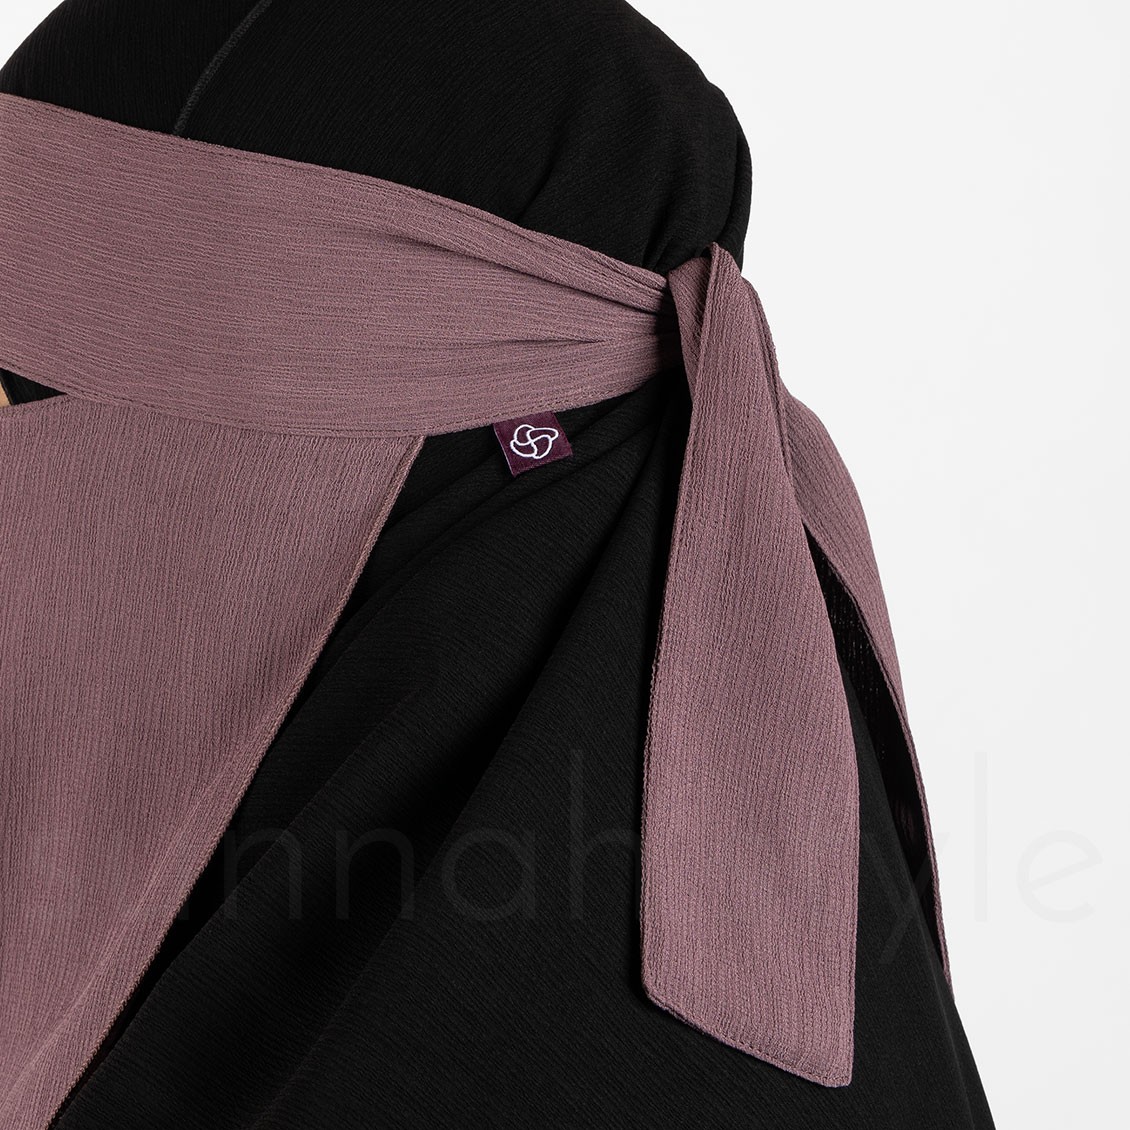 Sunnah Style Brushed One Layer Niqab Twilight Mauve